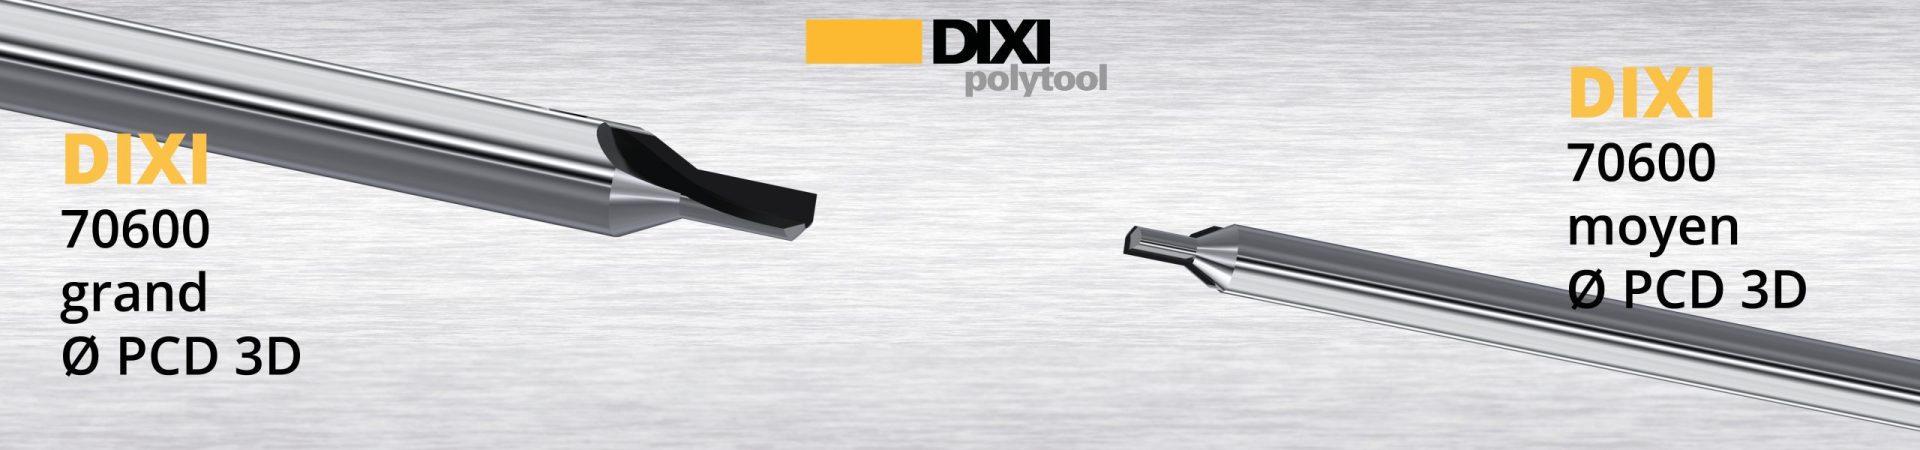 DIXI 70630 Pcd per superfinitura sviluppata per ottenere superfici trasparenti su materiali plastici